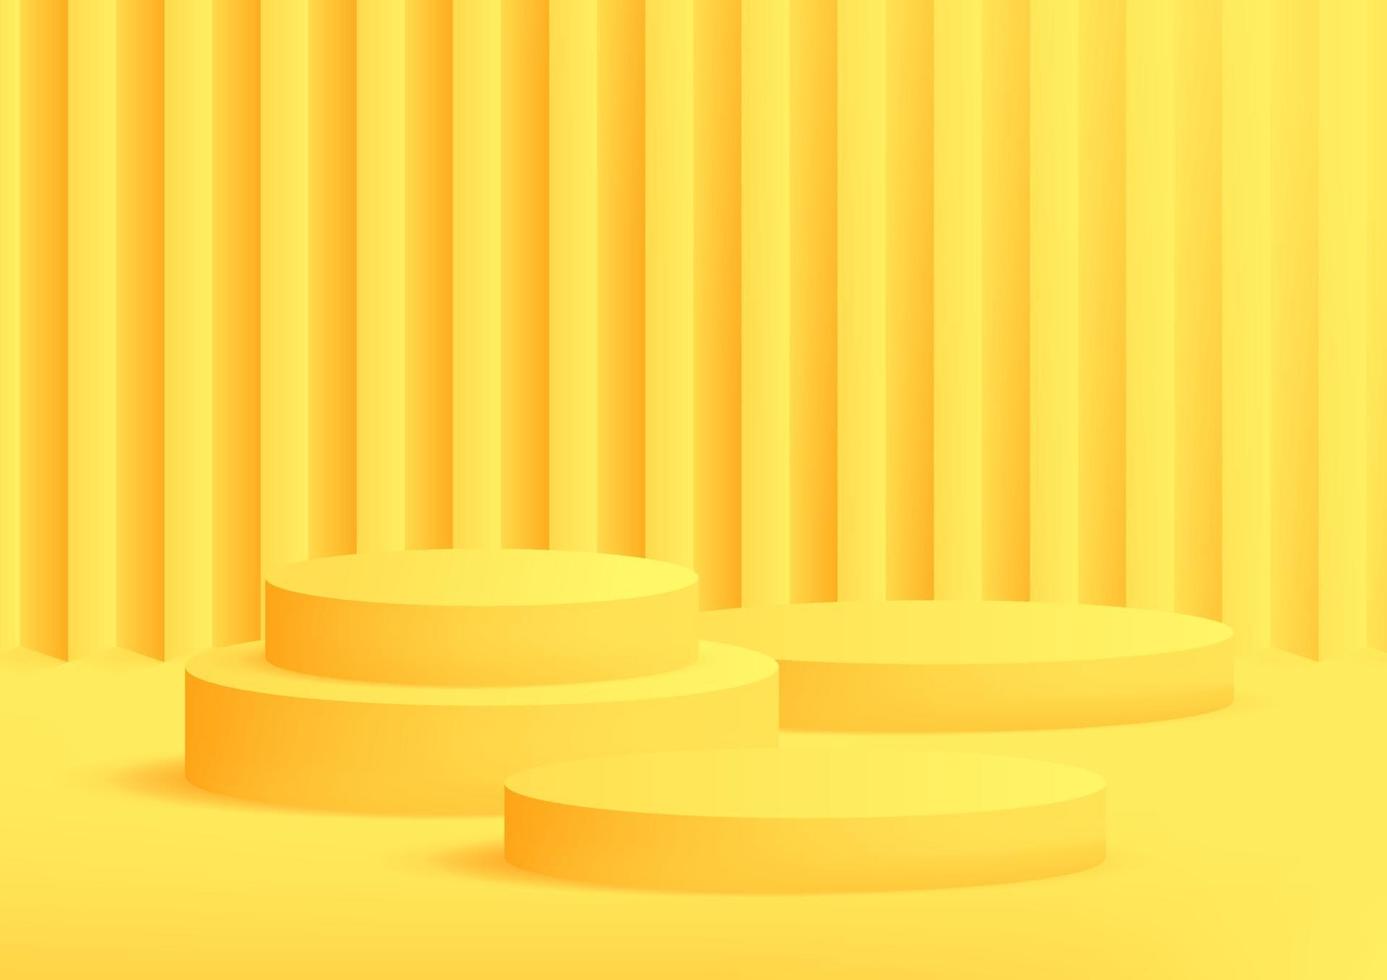 sfondo giallo studio podio vuoto per la visualizzazione del prodotto con lo spazio della copia. sfondo banner per pubblicizzare il prodotto in vendita. vettore